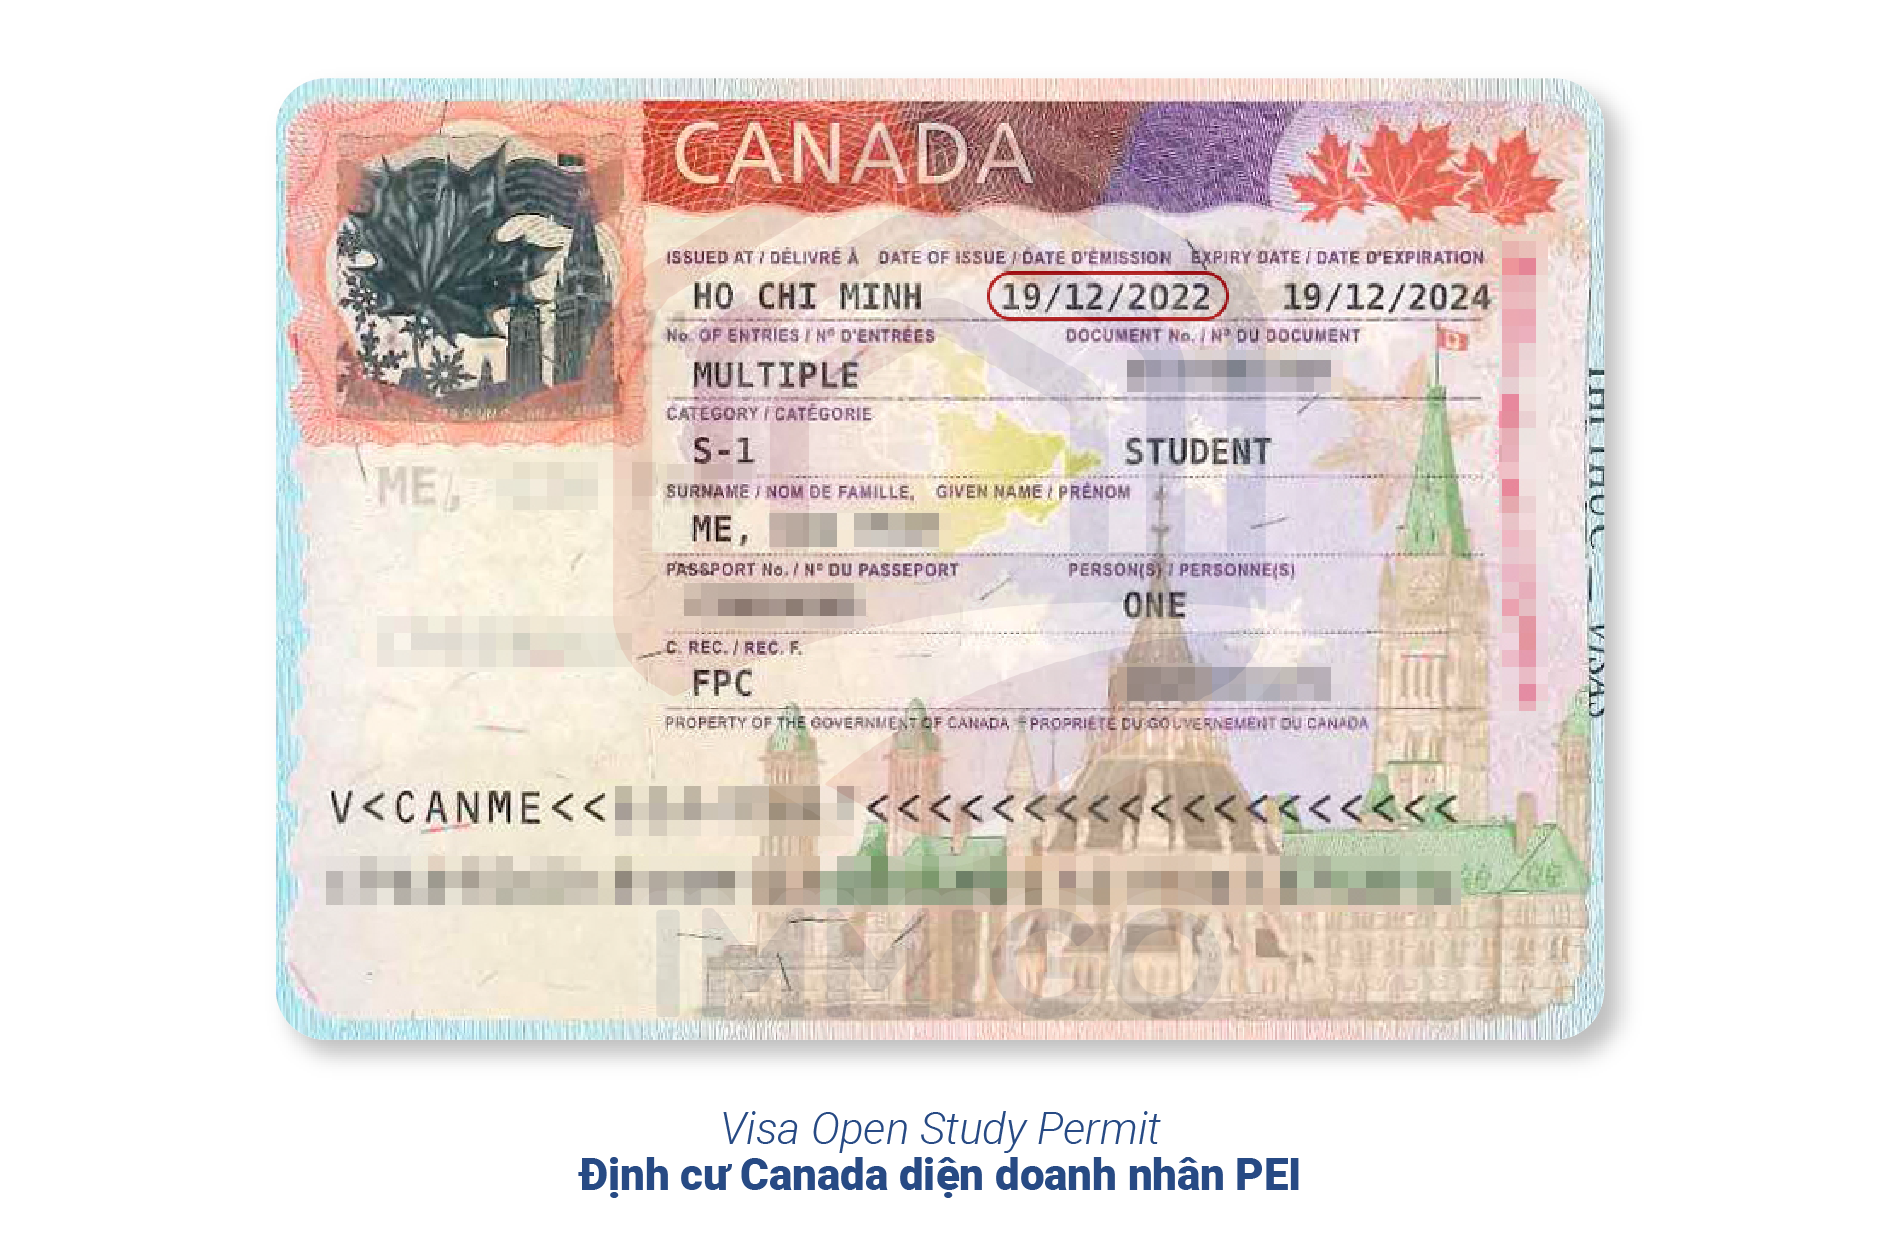 Visa Open Study Permit - Chương trình định cư Canada diện doanh nhân tỉnh bang PEI